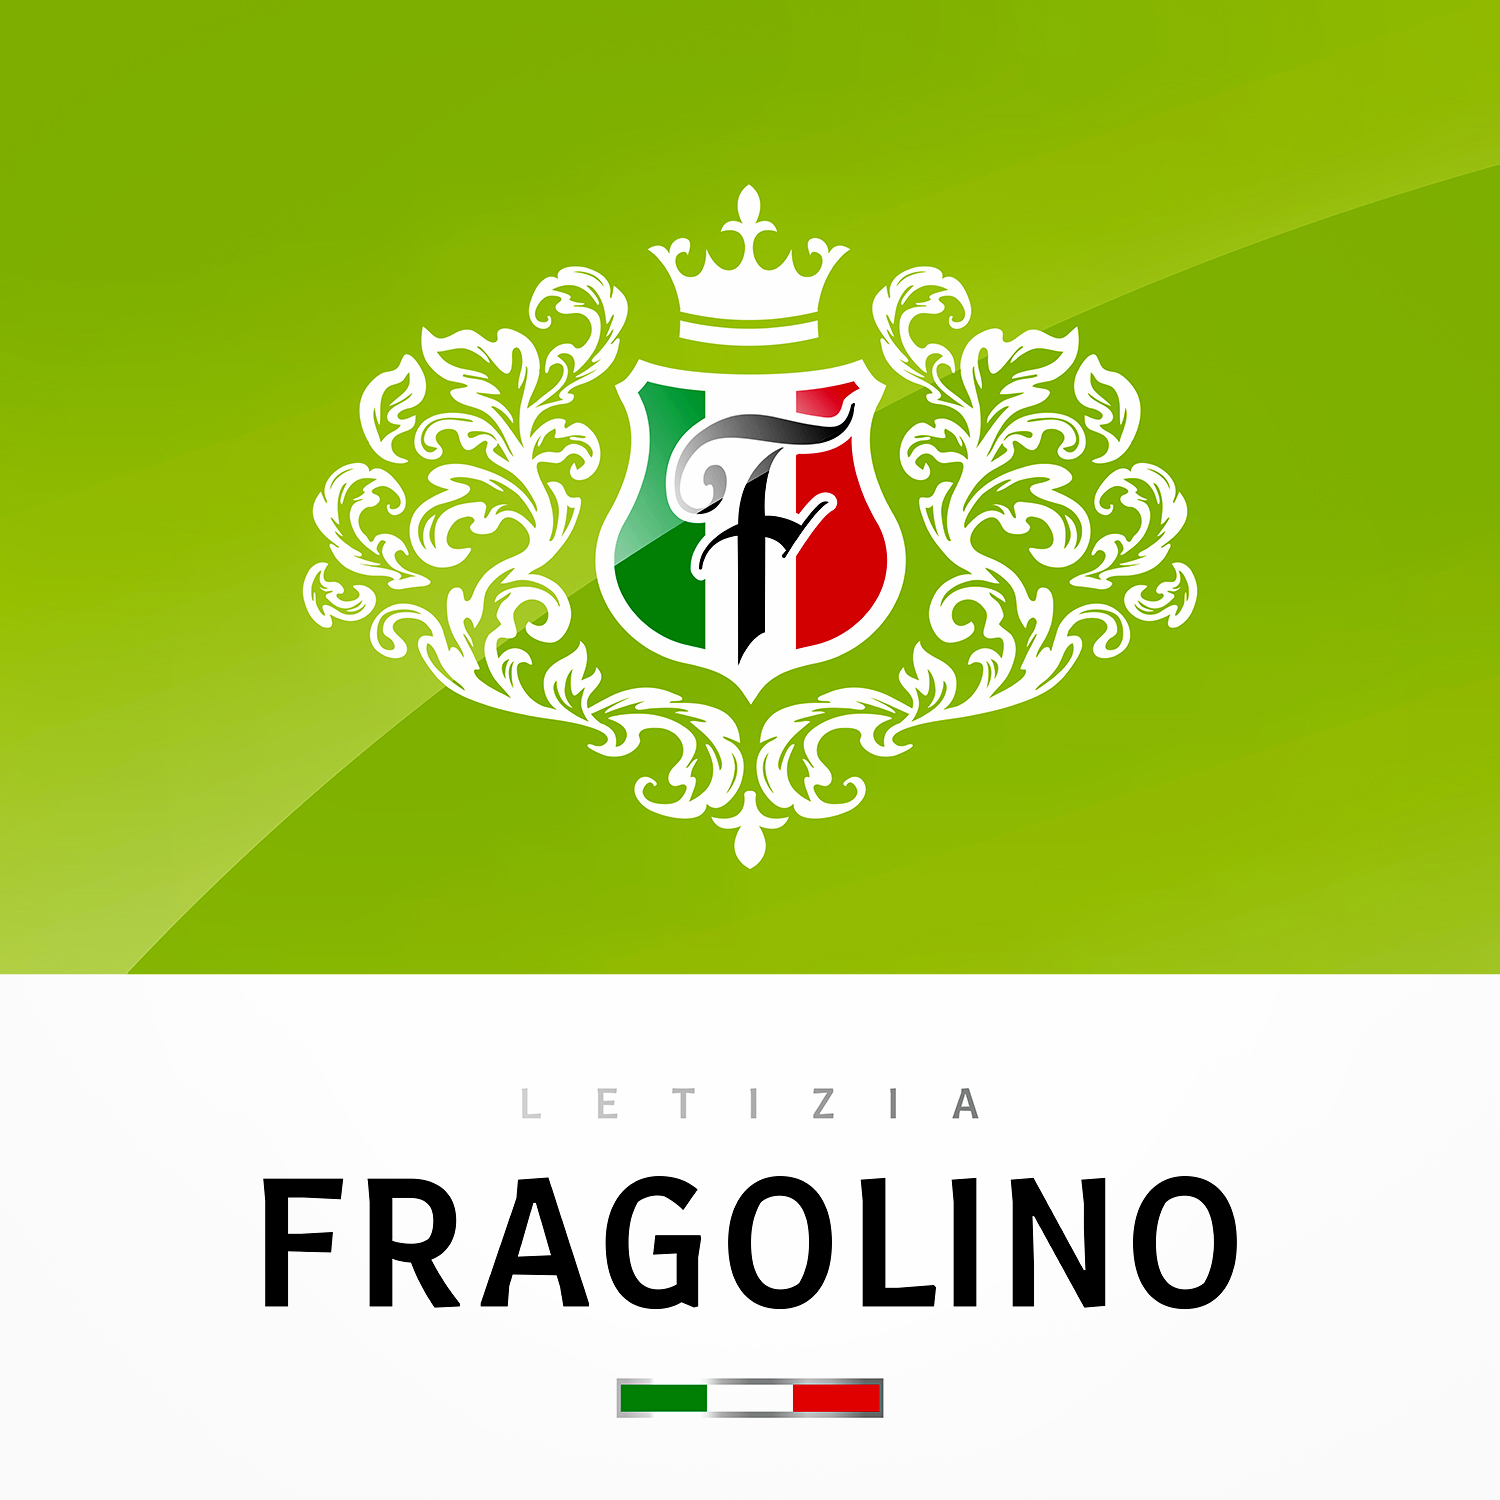 Fragolino罐装甜酒包装设计